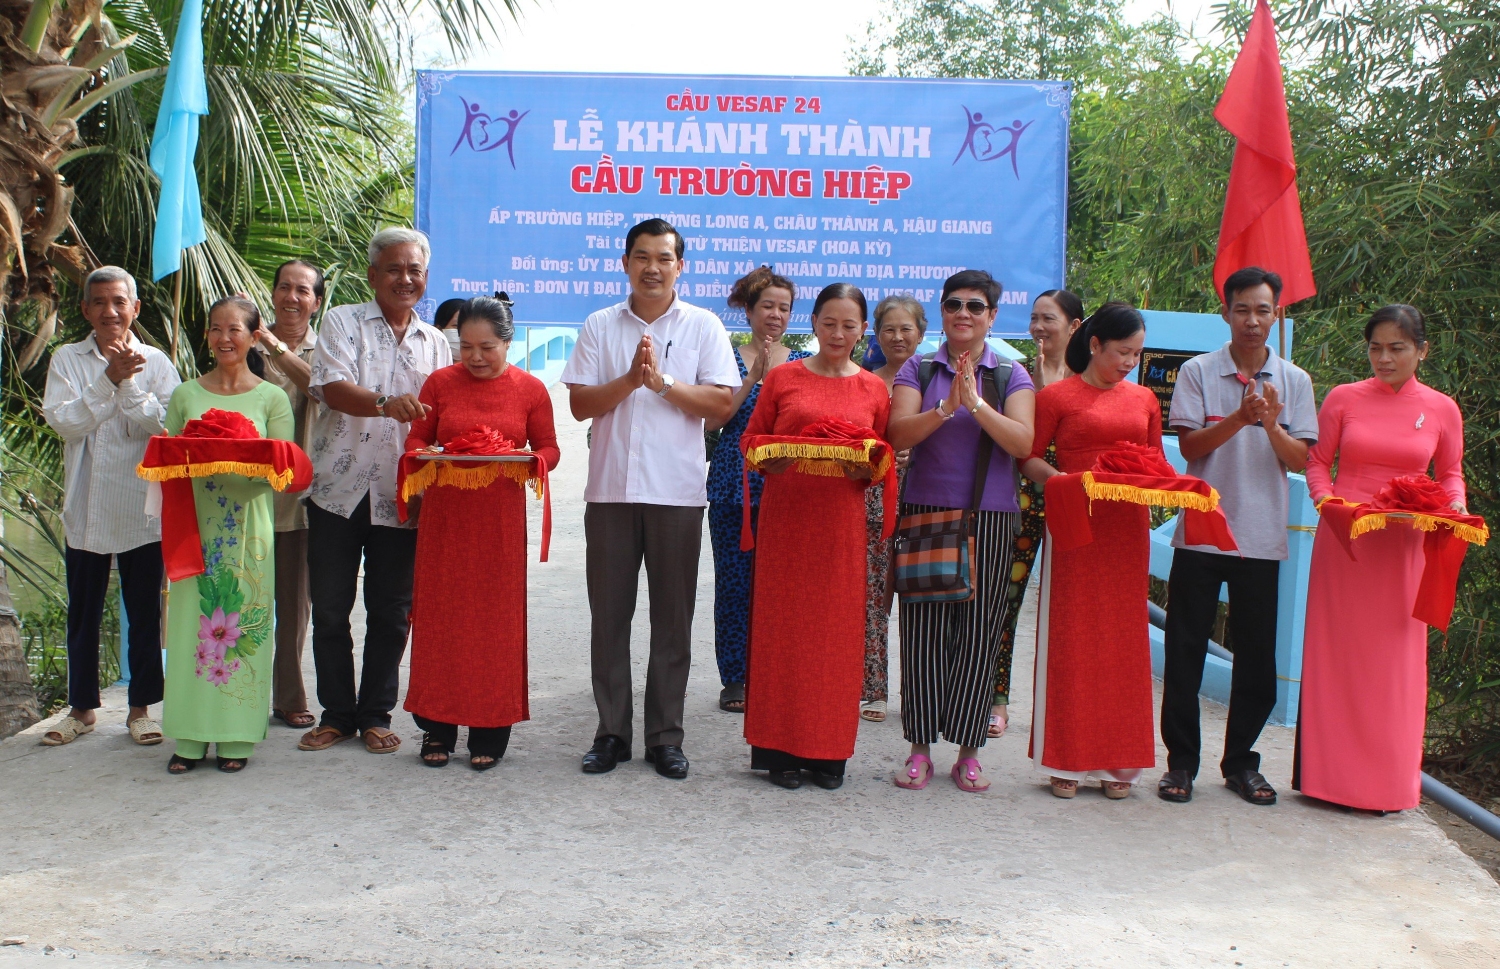 Ông Lê Minh Tuấn, Phó Chủ tịch Thường trực Liên hiệp các Tổ chức hữu nghị tỉnh (thứ 6 từ trái sang) cắt băng khánh thành cầu Trường Hiệp, huyện Châu Thành A, do Qũy từ thiện VESAF (Hoa Kỳ) tài trợ.